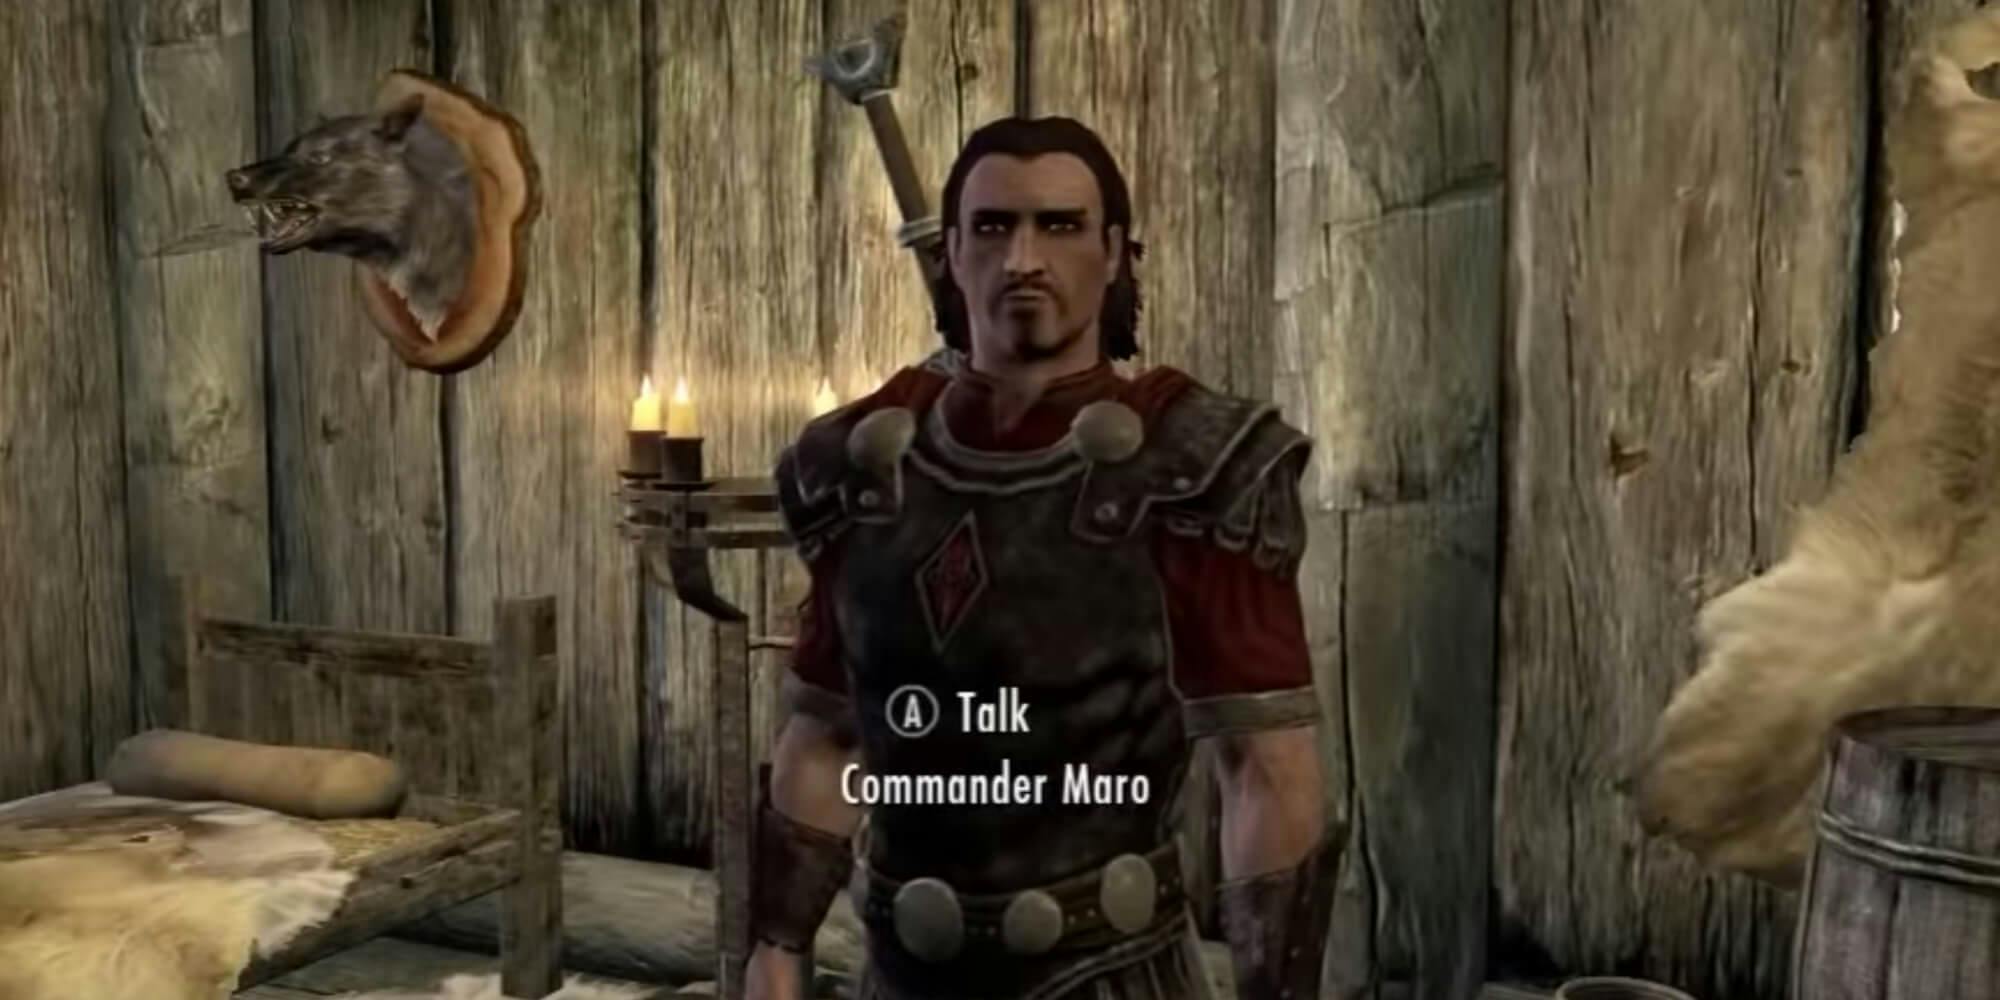 Commander Maro